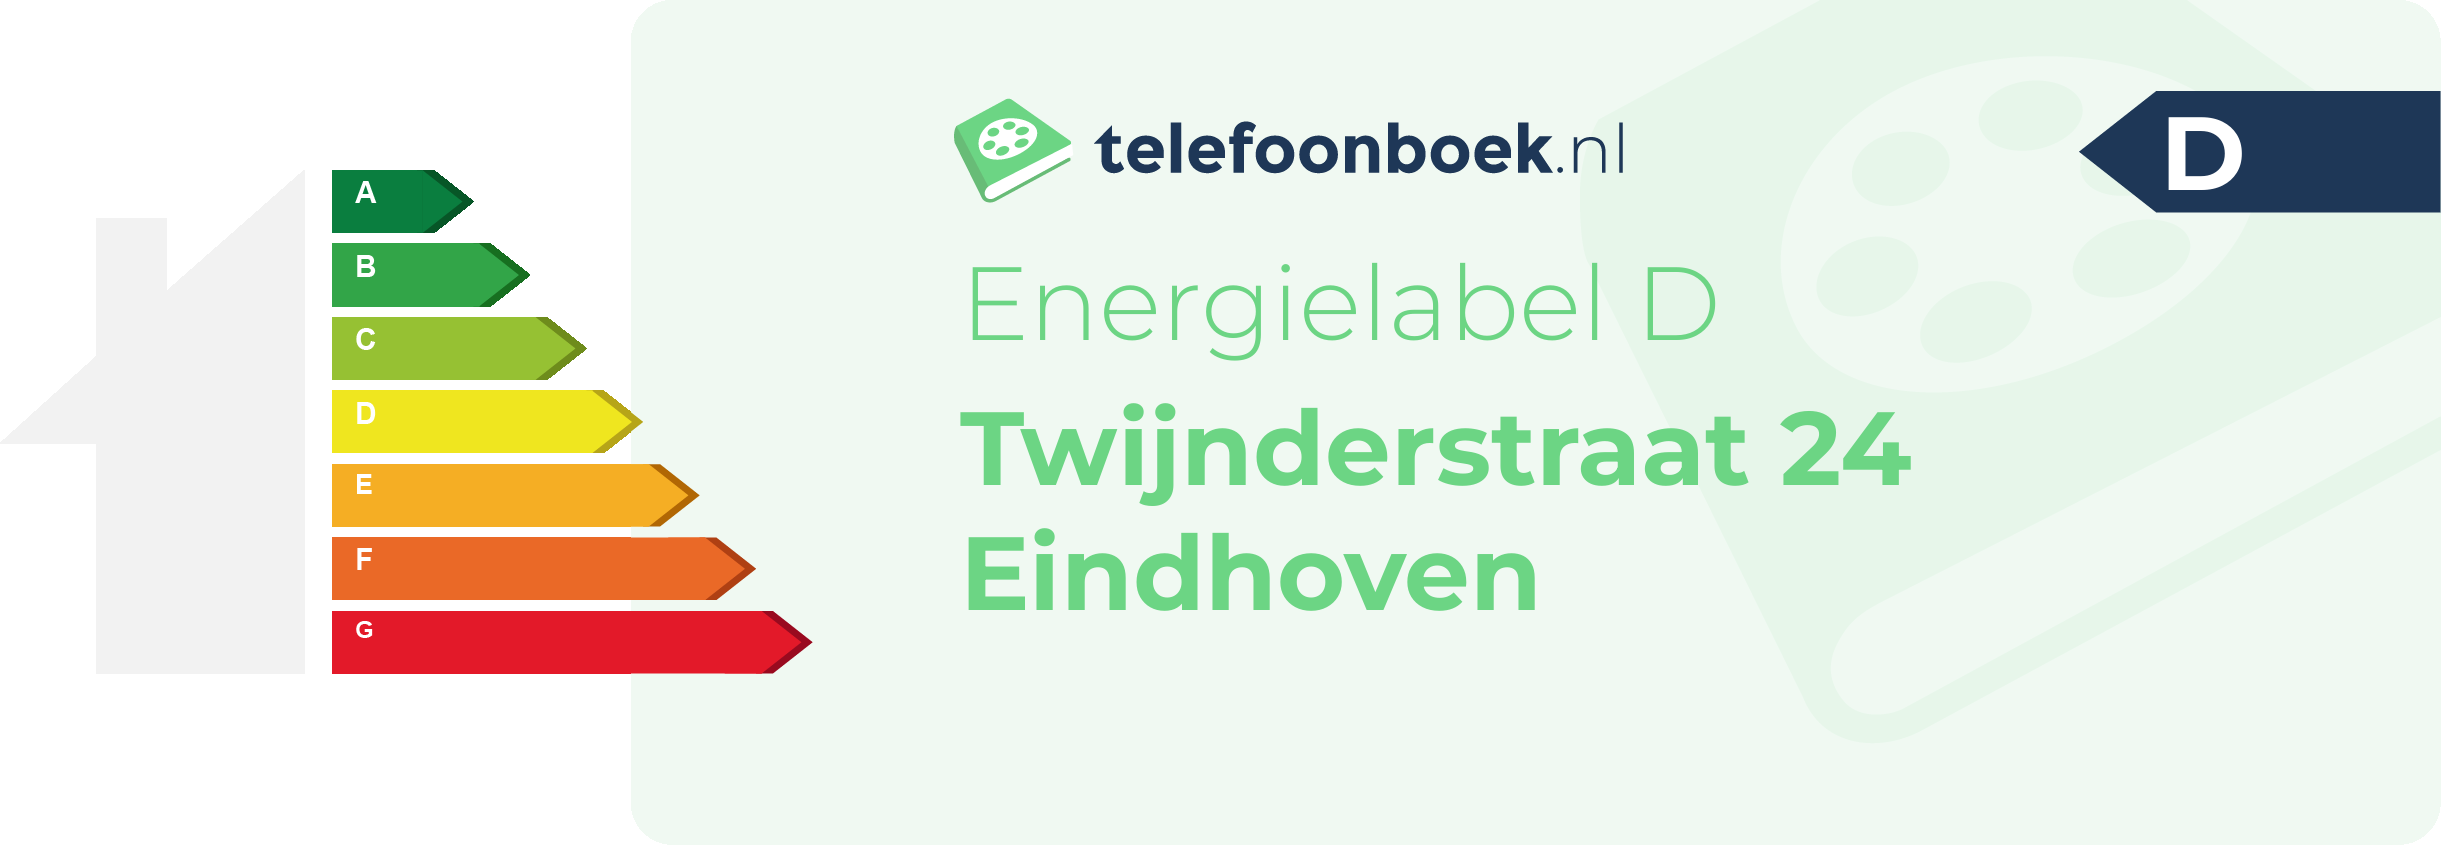 Energielabel Twijnderstraat 24 Eindhoven